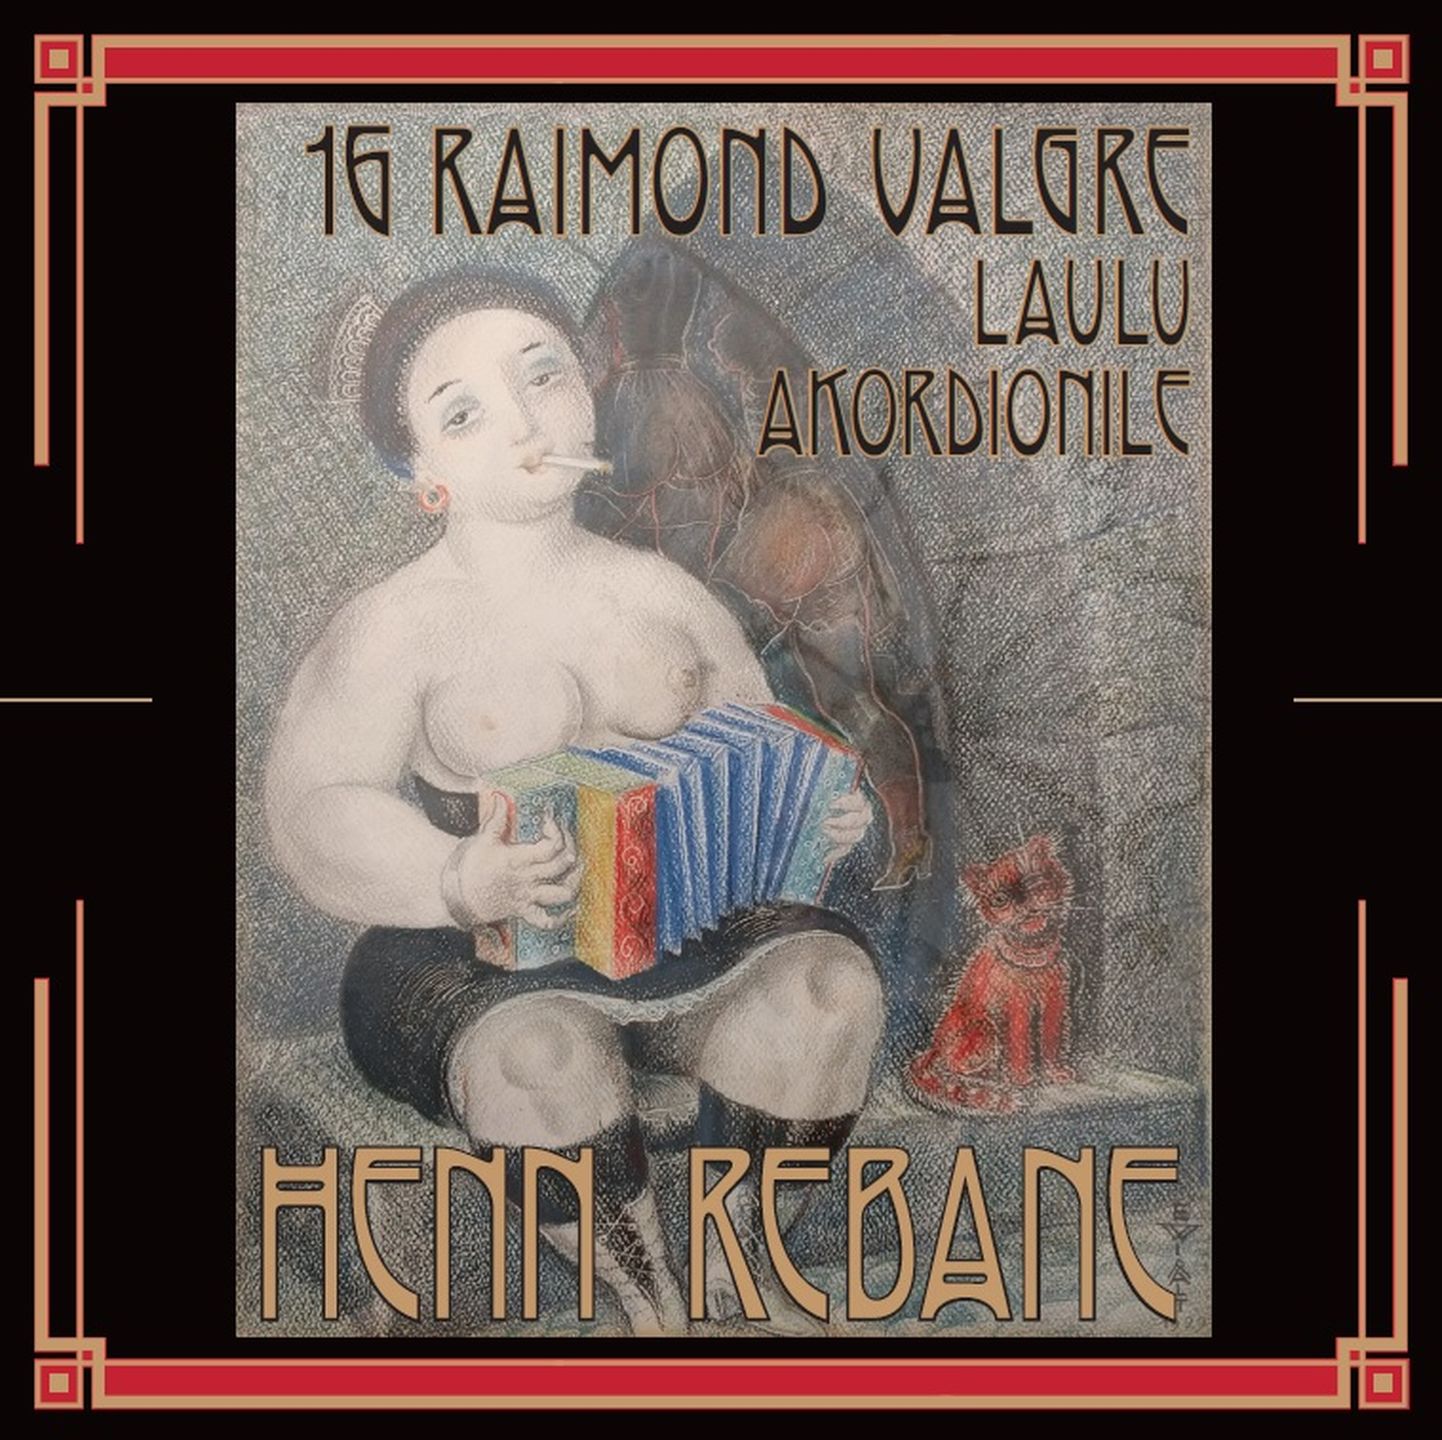 Henn Rebase album Raimond Valgre muusikast.